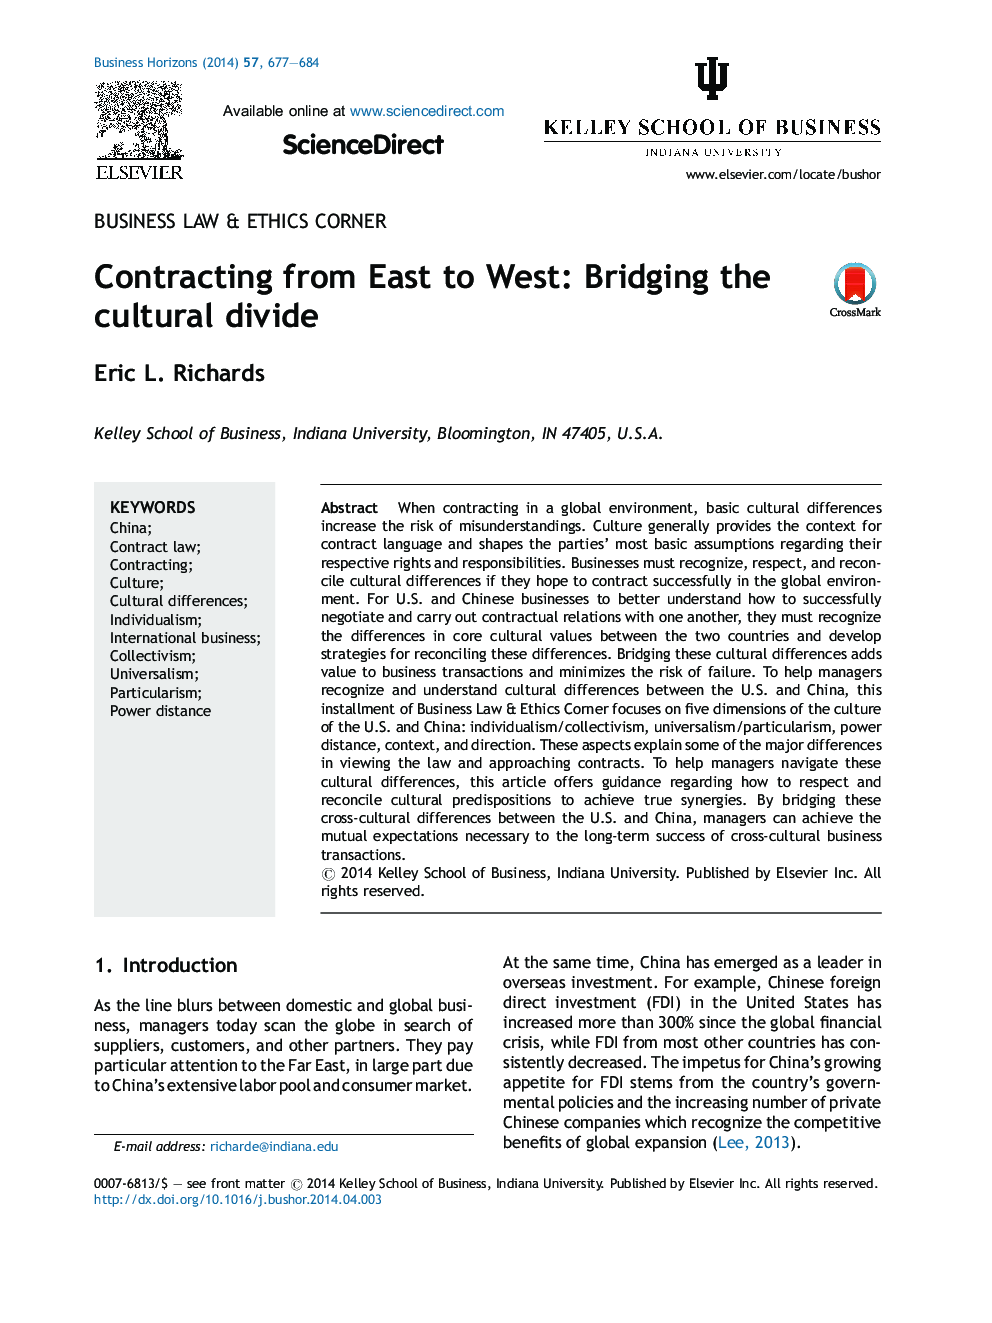 قرارداد از شرق به غرب: برچیدن تقسیم فرهنگی 